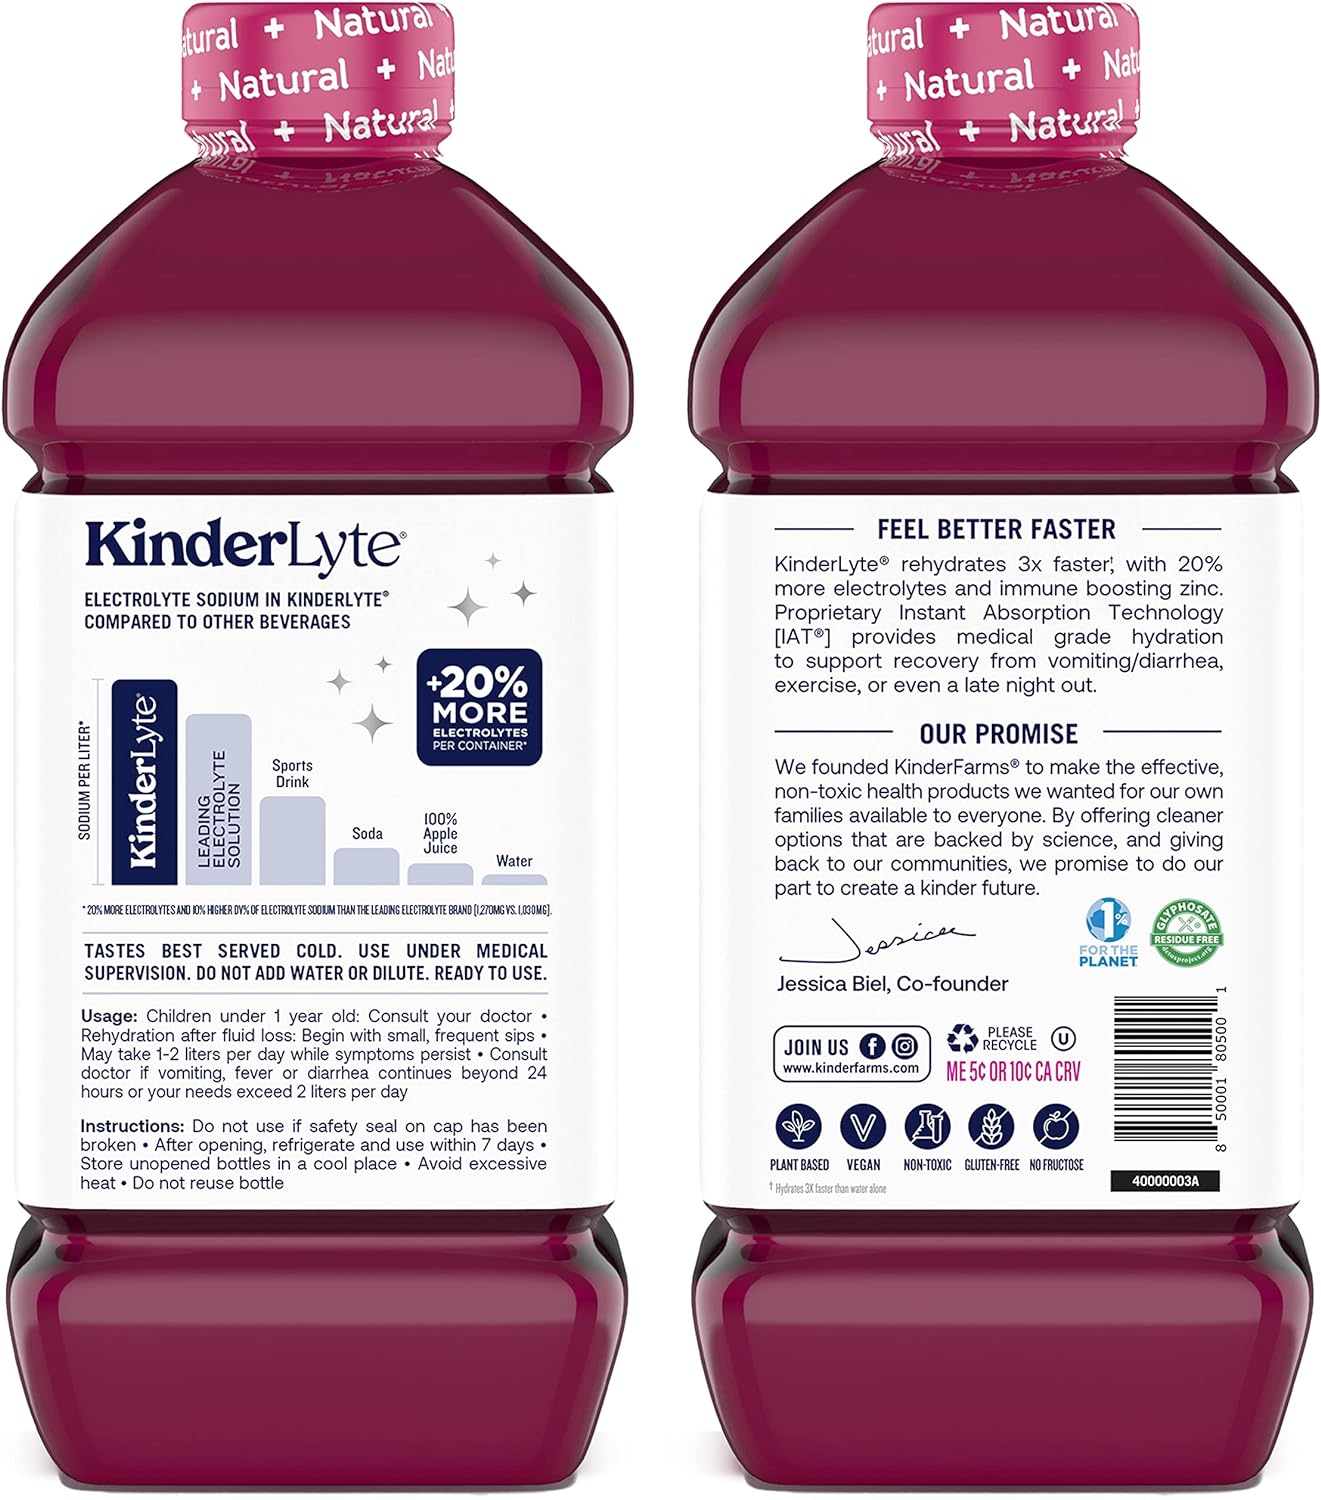 Kinderlyte | Natural Pediatric Electrolyte Solution | Doctor-Formulate